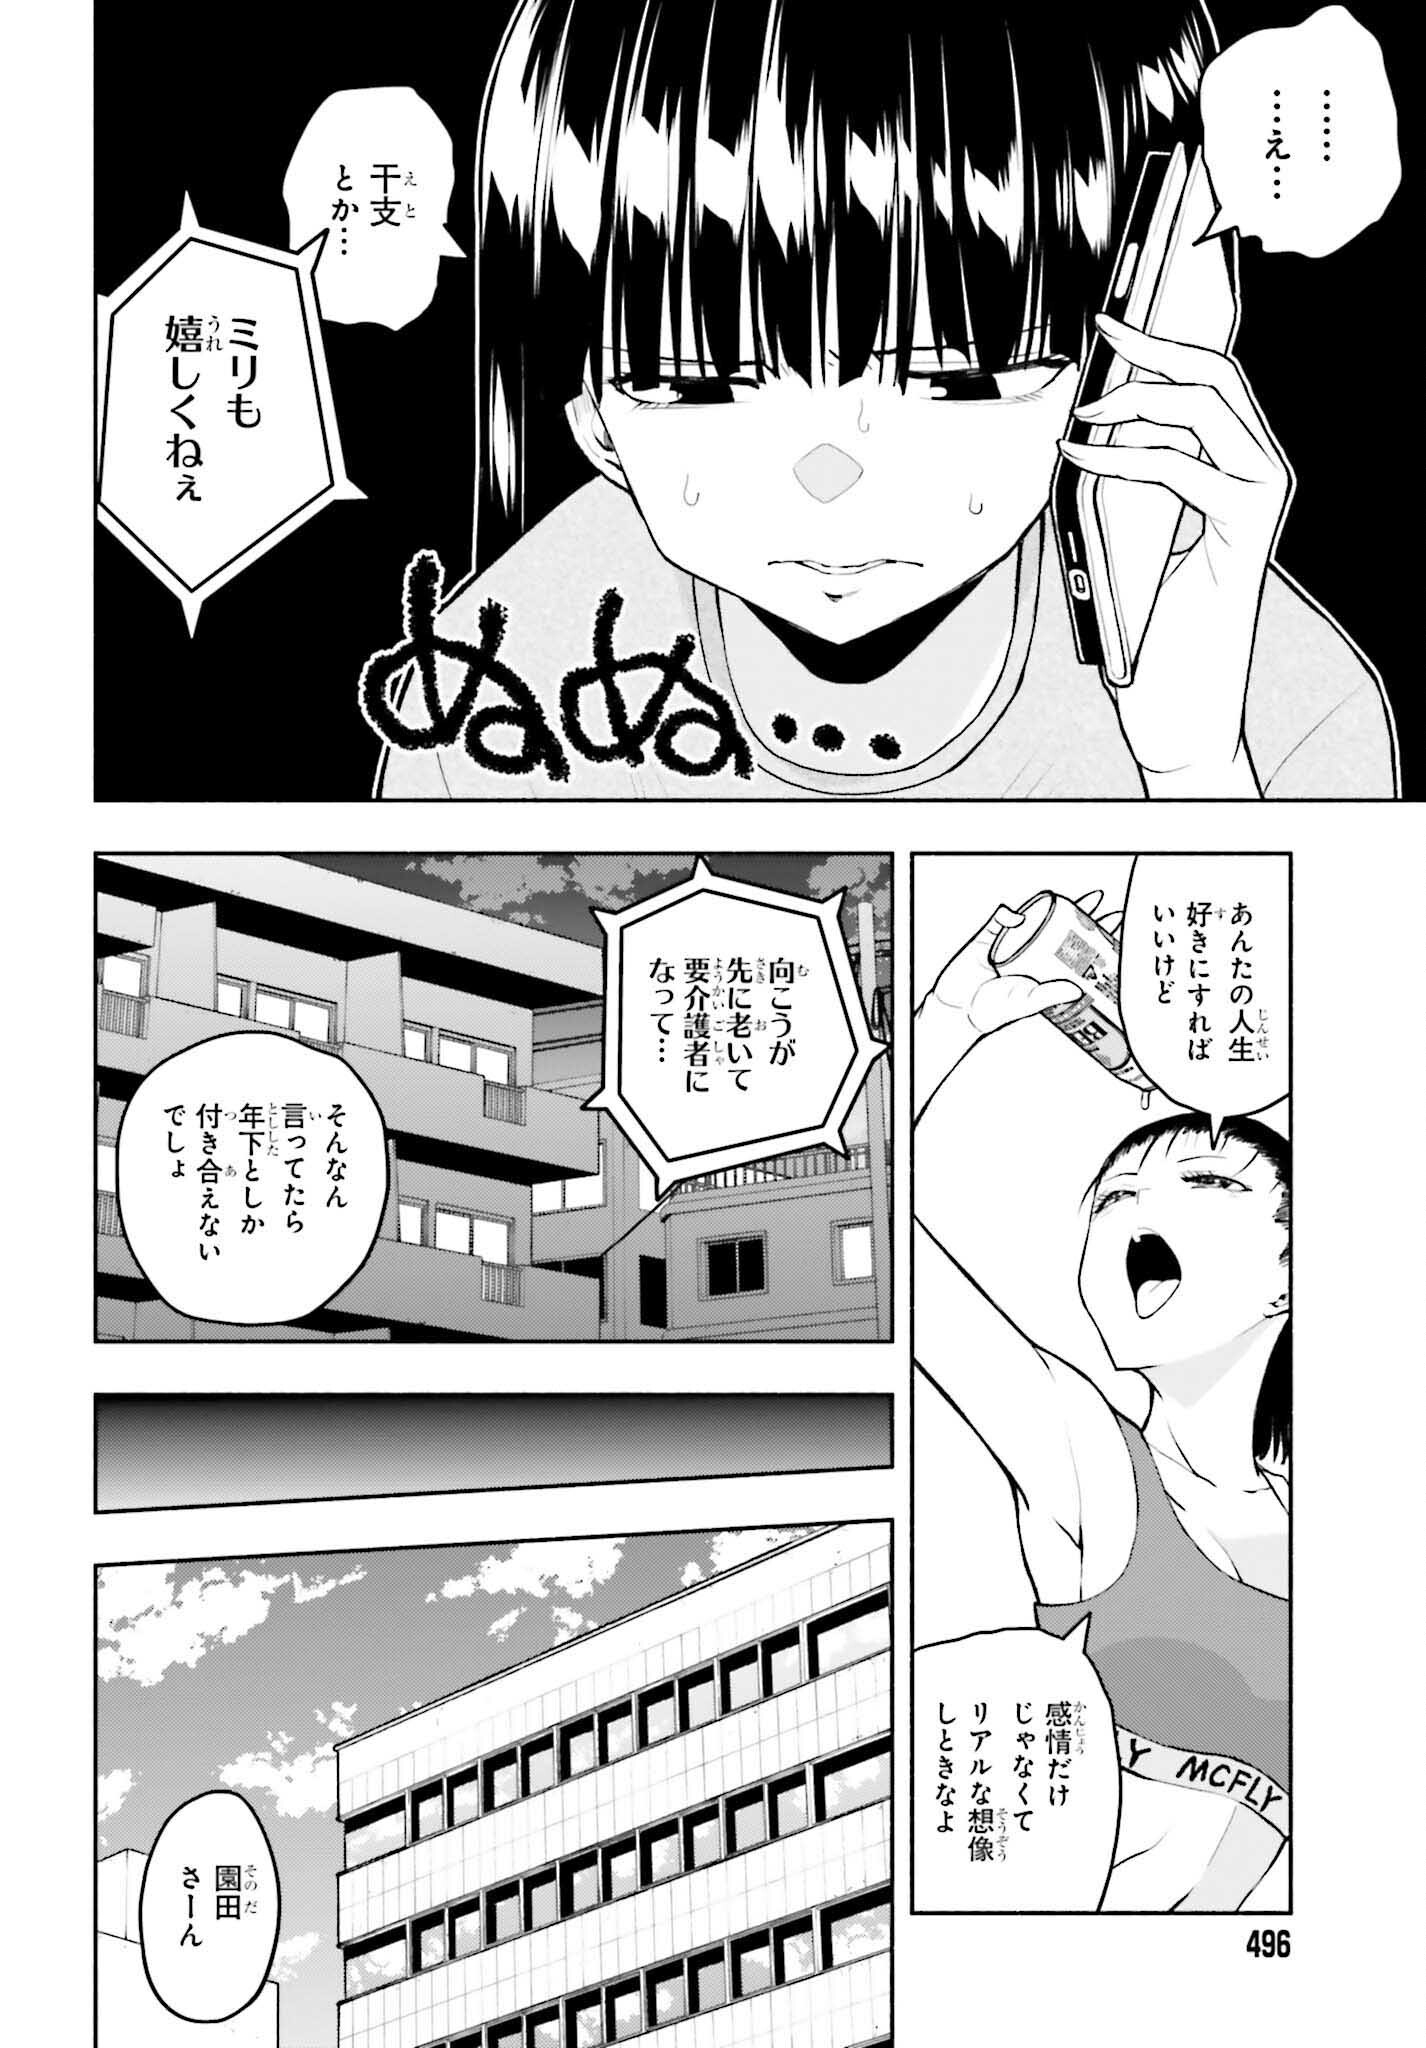 Omiai ni Sugoi Komyushou ga Kita - Chapter 11 - Page 2